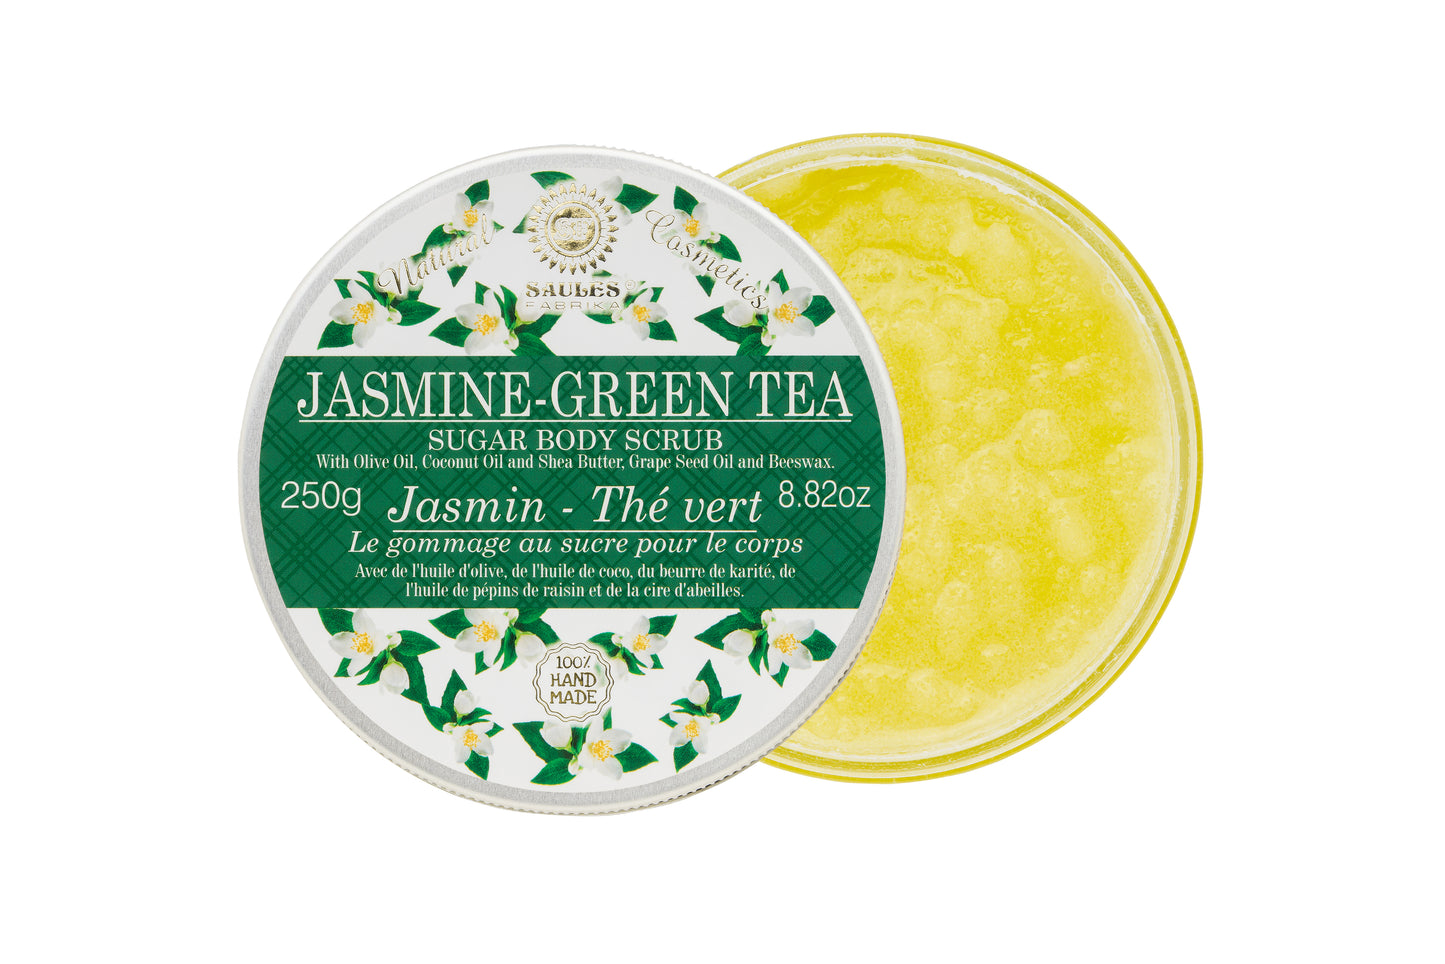 Sugar Body Scrub Jasmine-Green tea 250g